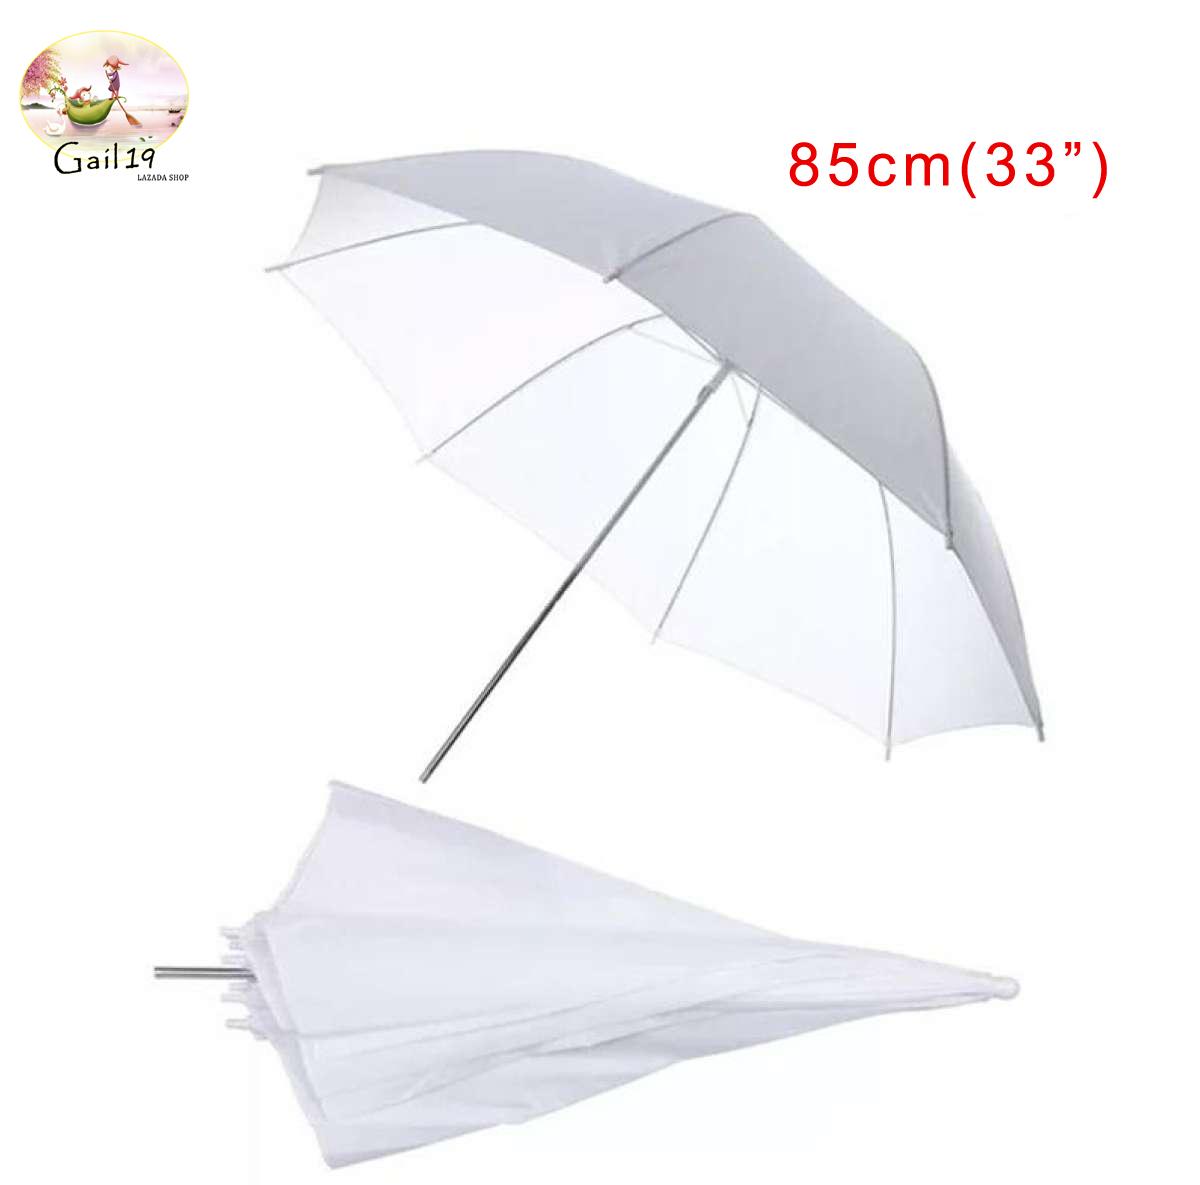 ร่มทะลุสีขาว ร่มคุณภาพสูง 33  / 85cm เนื้อร่มโปร่งแสง ผ้าเกรดสูงสำหรับถ่ายภาพบุคคล / การถ่ายภาพเสื้อผ้า White Umbrella 33  / 85cm Translucent umbrella High-grade fabric for portraiture / clothing photography